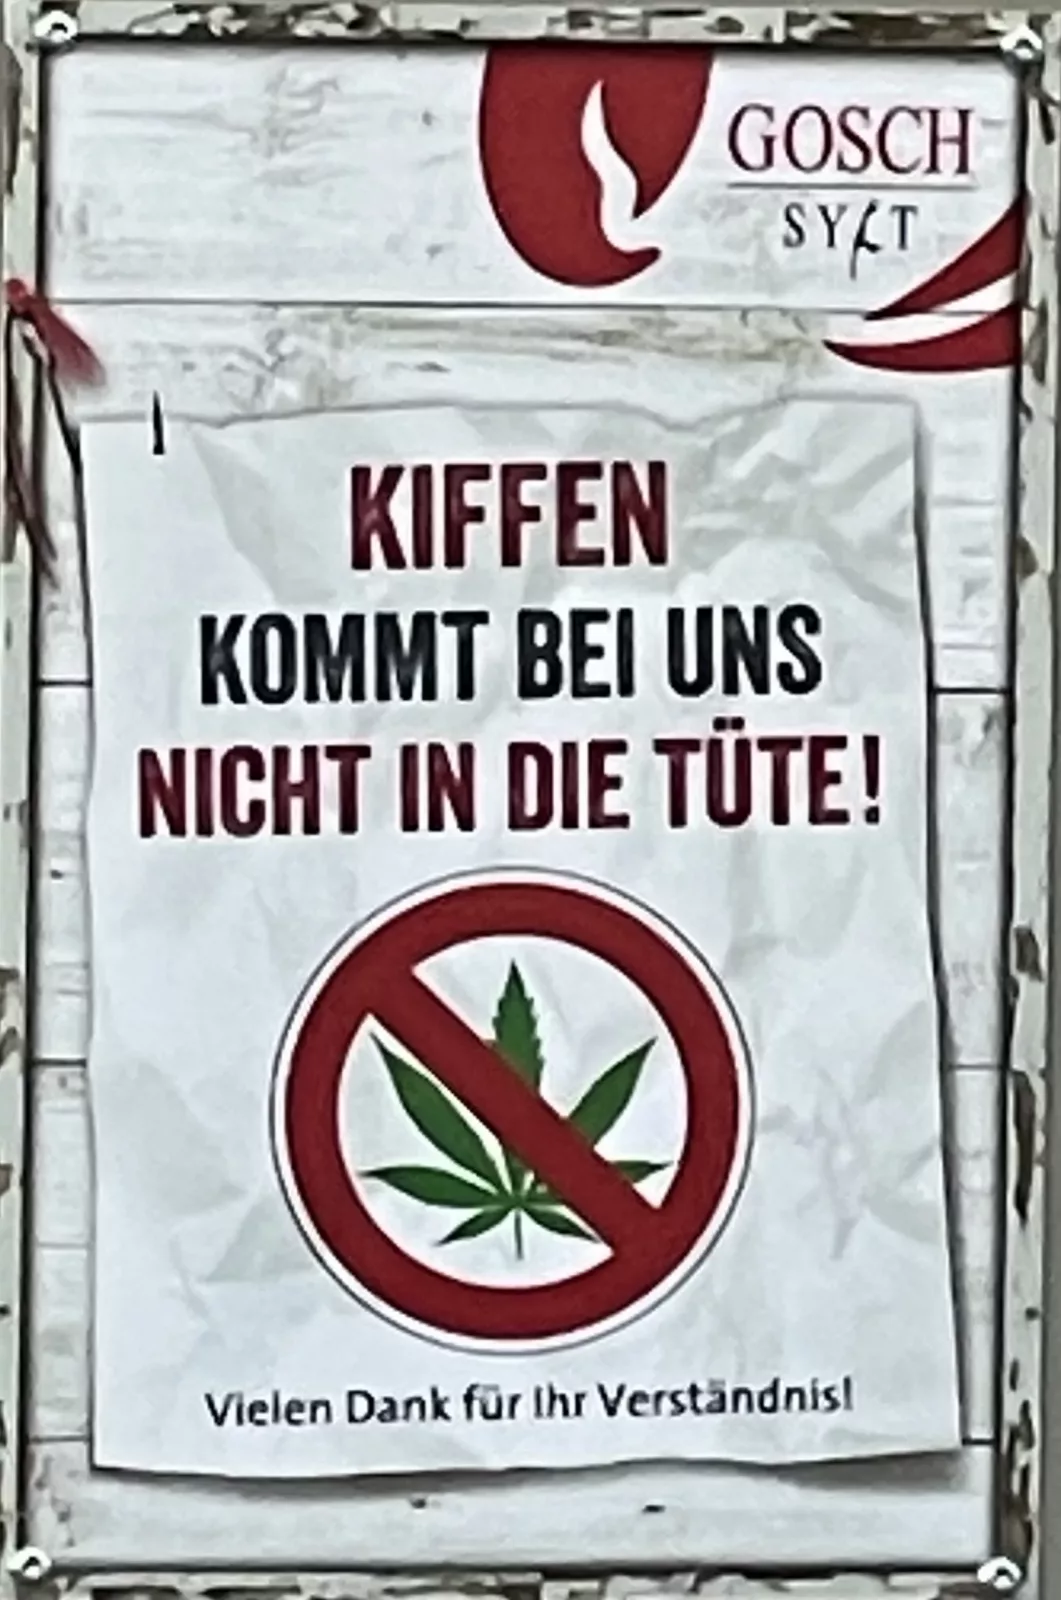 Gosch-Verbotsschild gegen Kiffen im Restaurantaußenbereich.